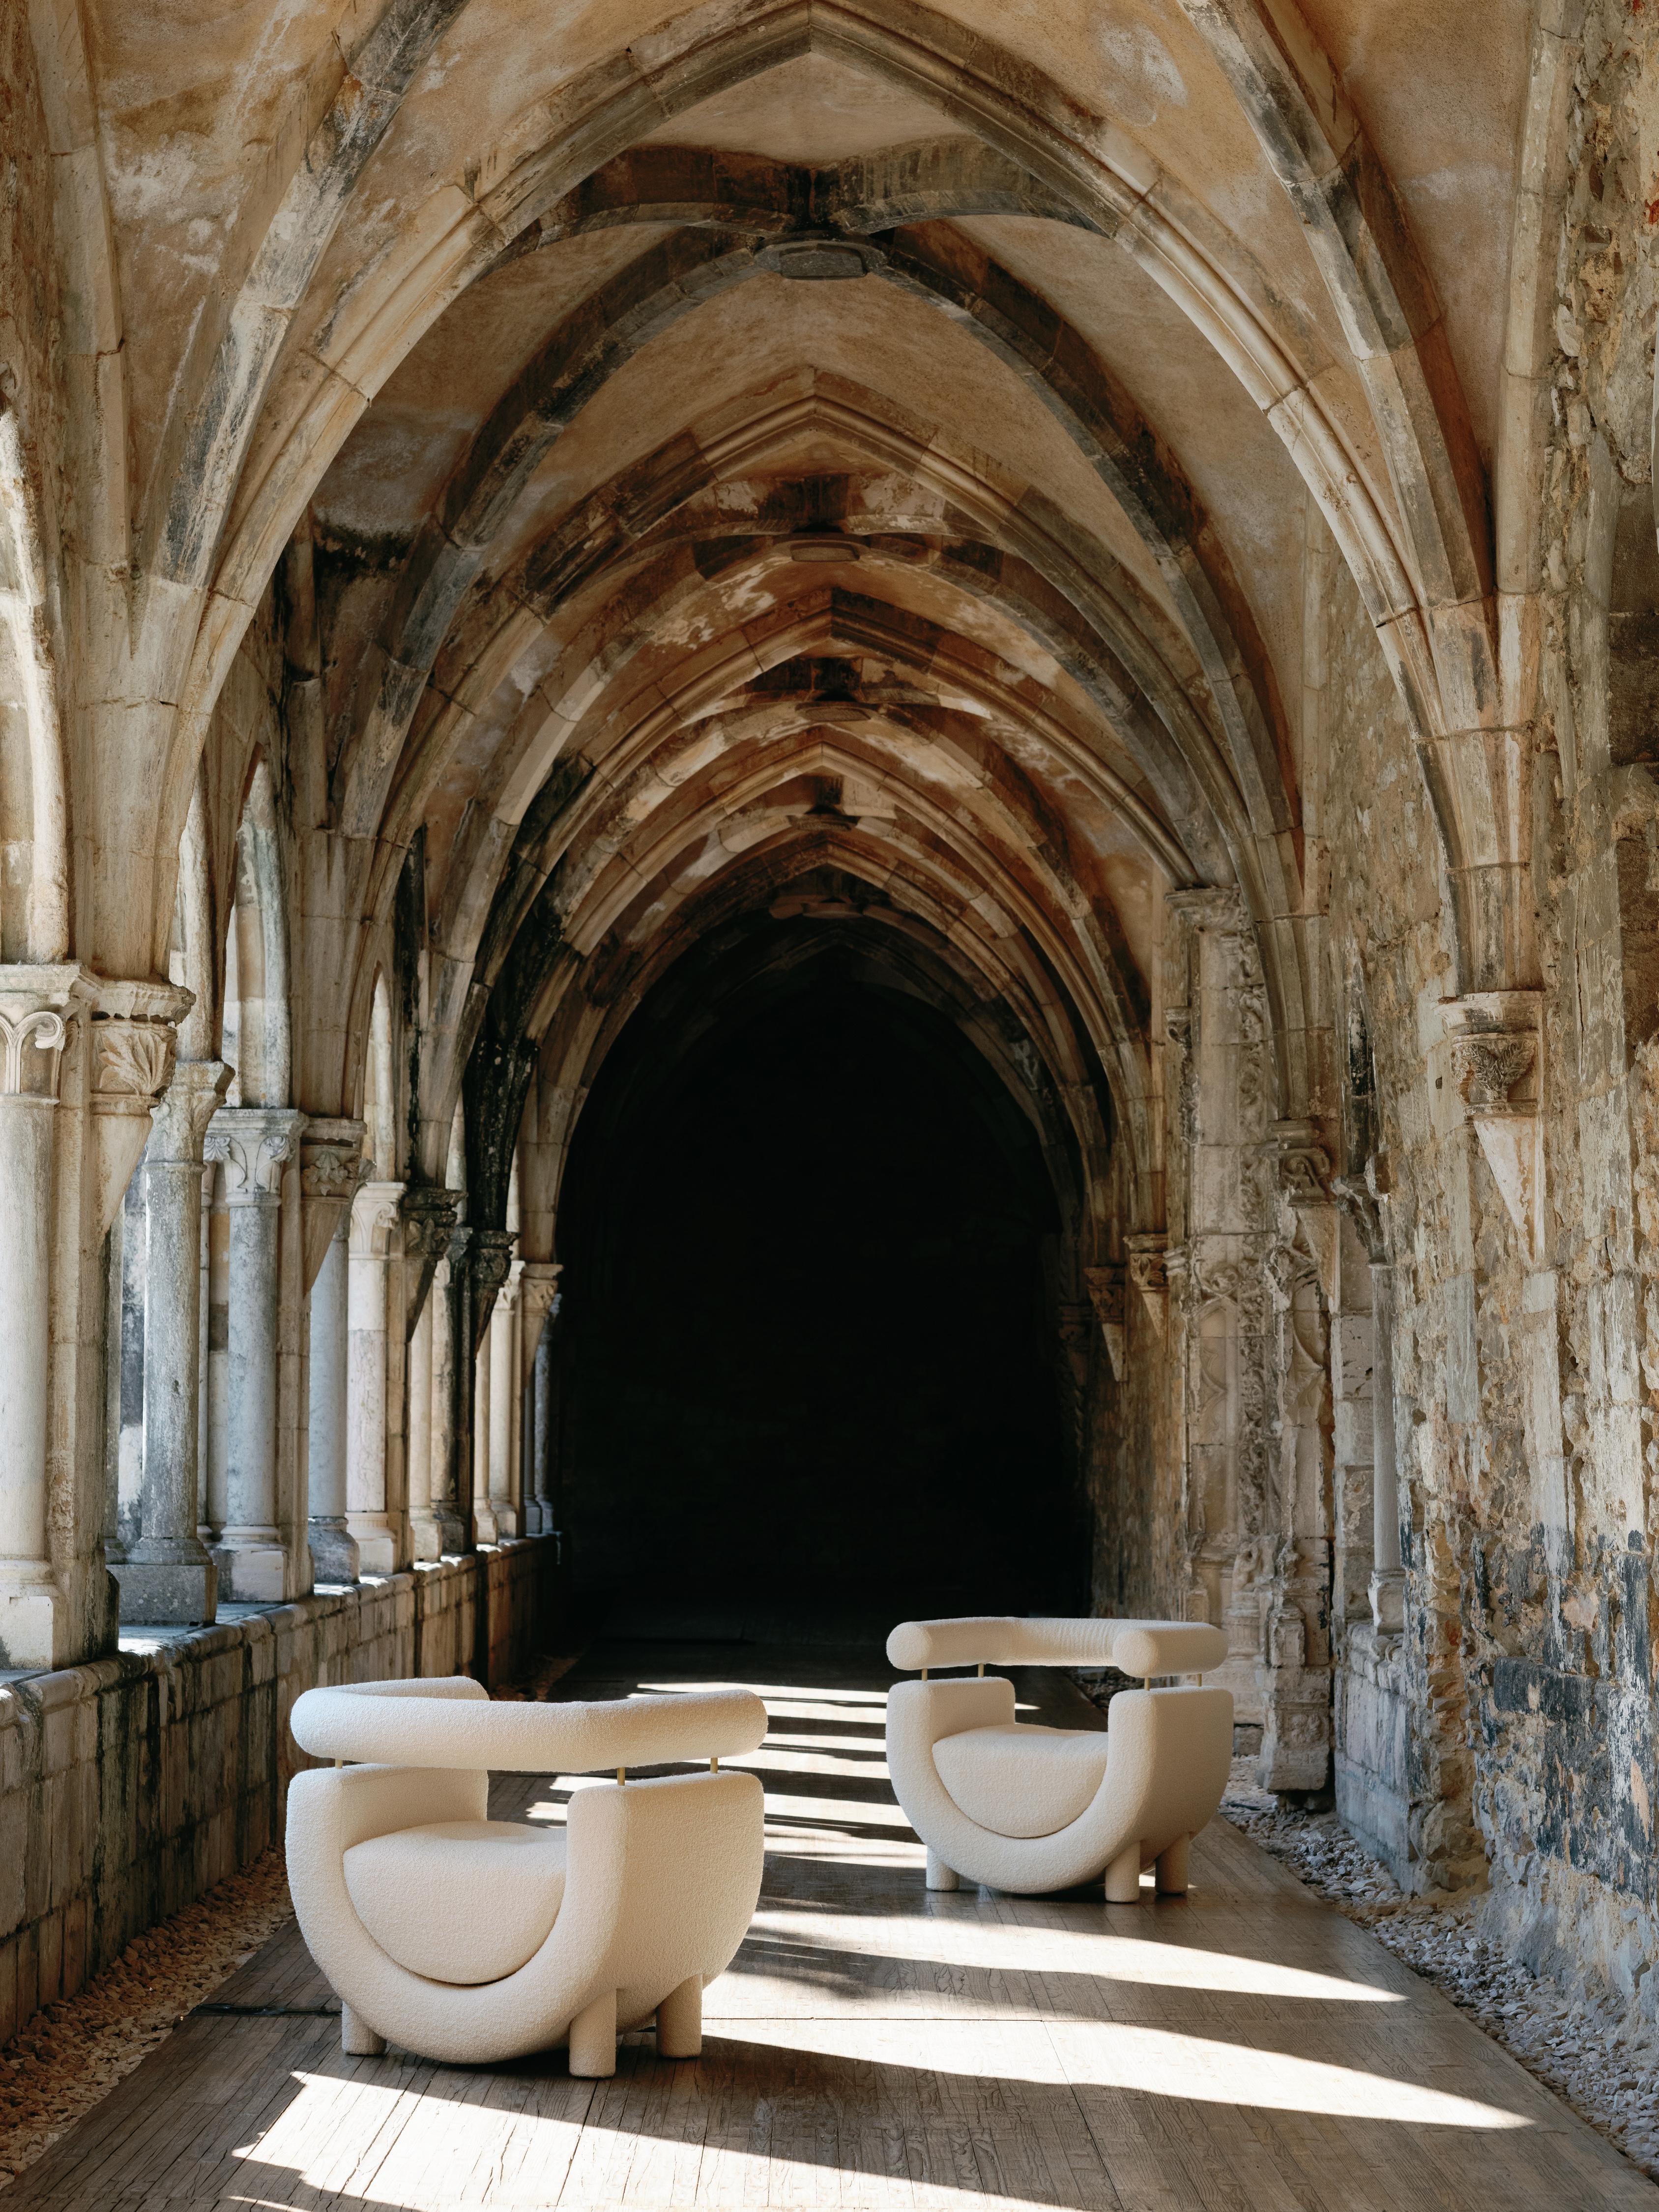 Fauteuil Mel, Collection Contemporary, Fabriqué à la main au Portugal - Europe par Greenapple.

Le fauteuil Mel, nommé d'après le don le plus pur et le plus doux de la nature, fait ressortir l'essence réconfortante du miel tout en procurant des